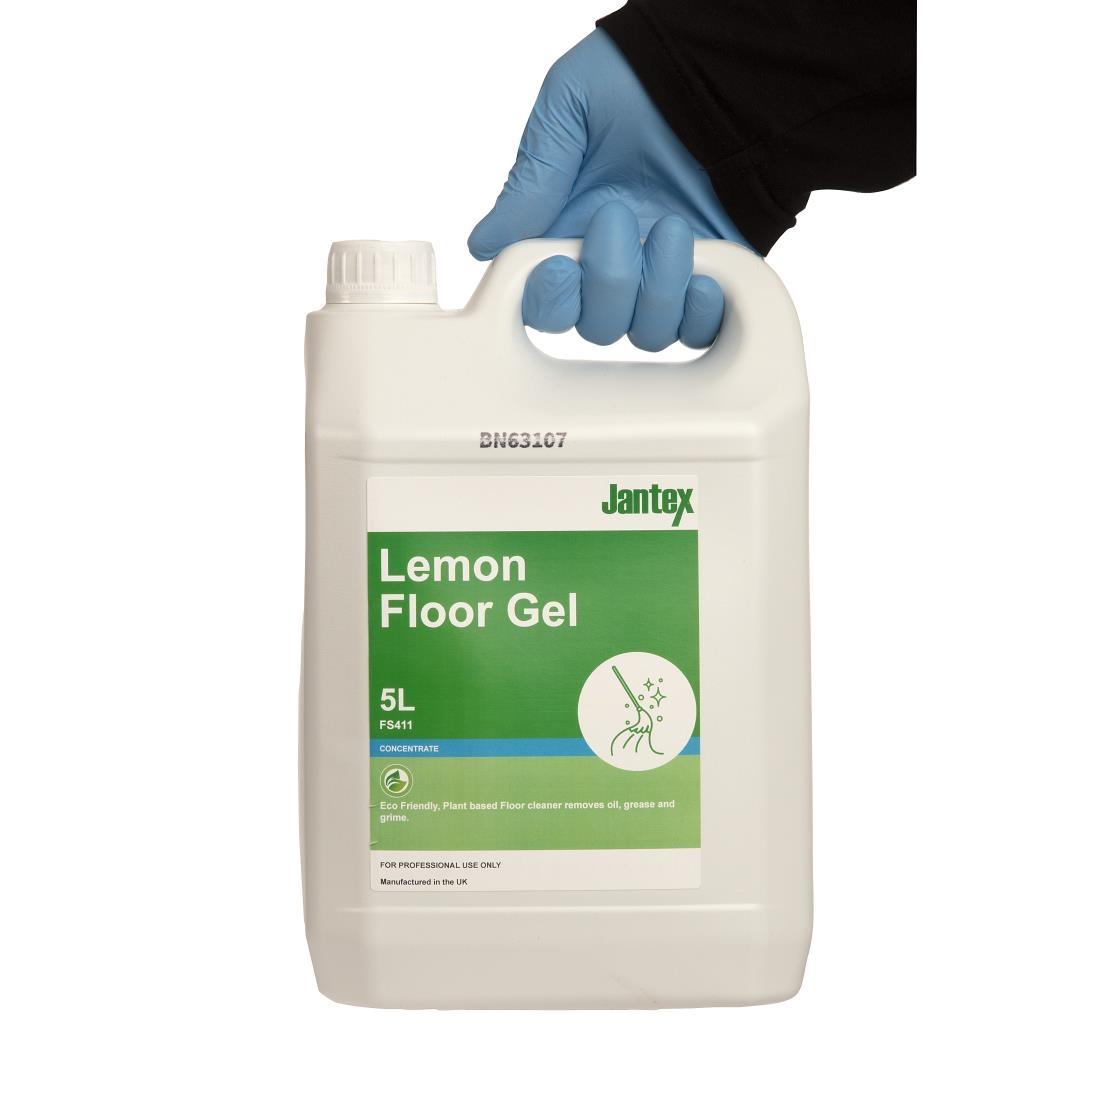 Jantex Green Lemon Floor Gel Cleaner Concentrate 5Ltr - FS411  - 4